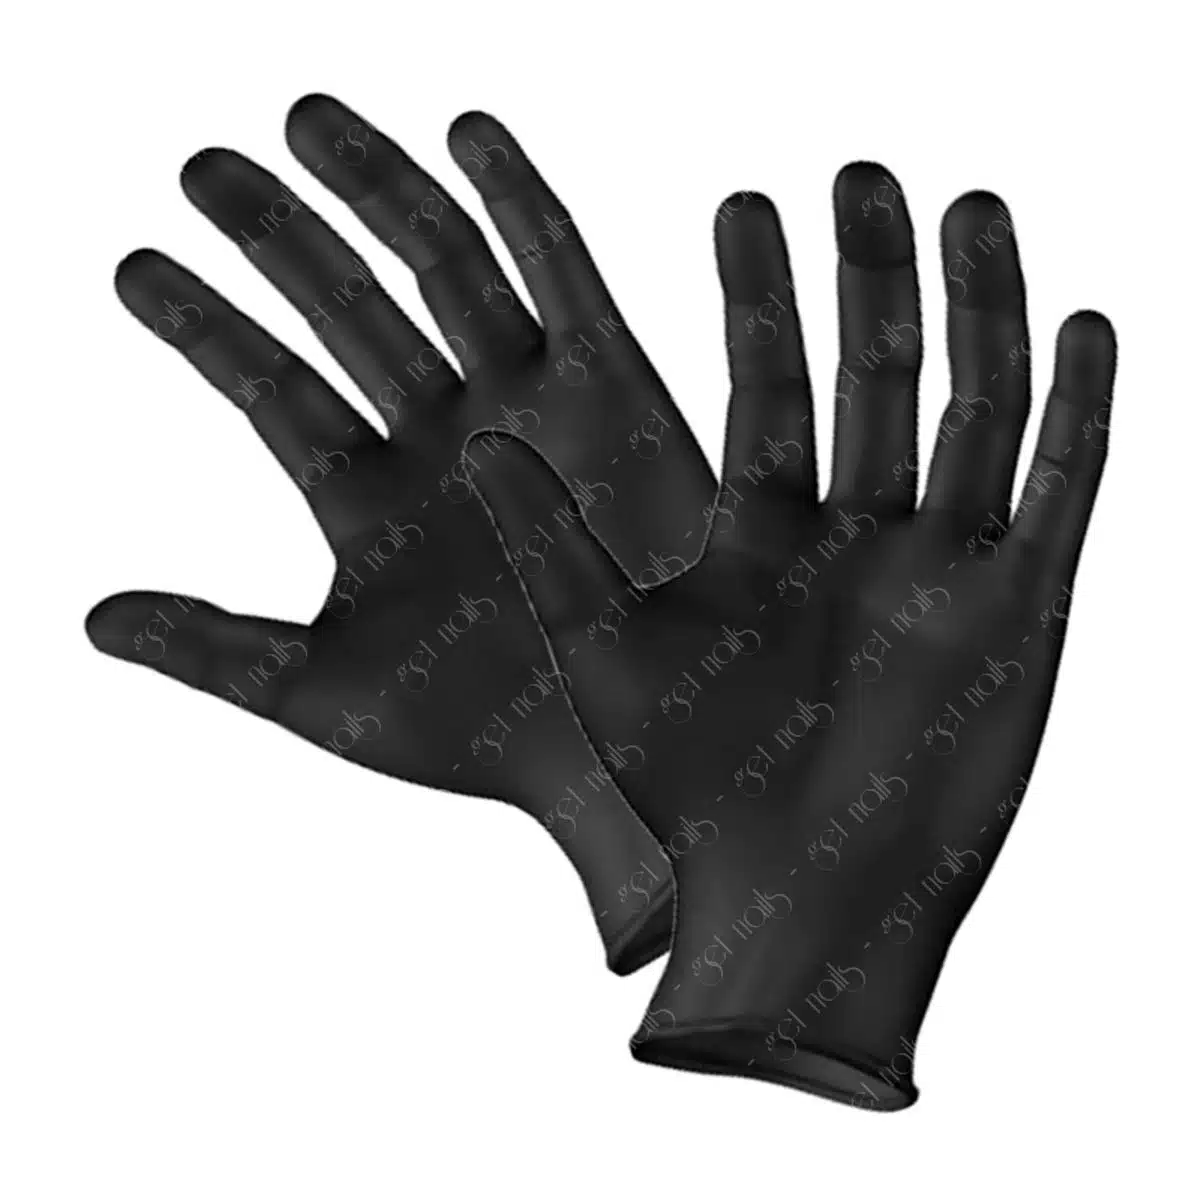 Get Nails Austria - Hygiene gloves size S, 100 pcs.